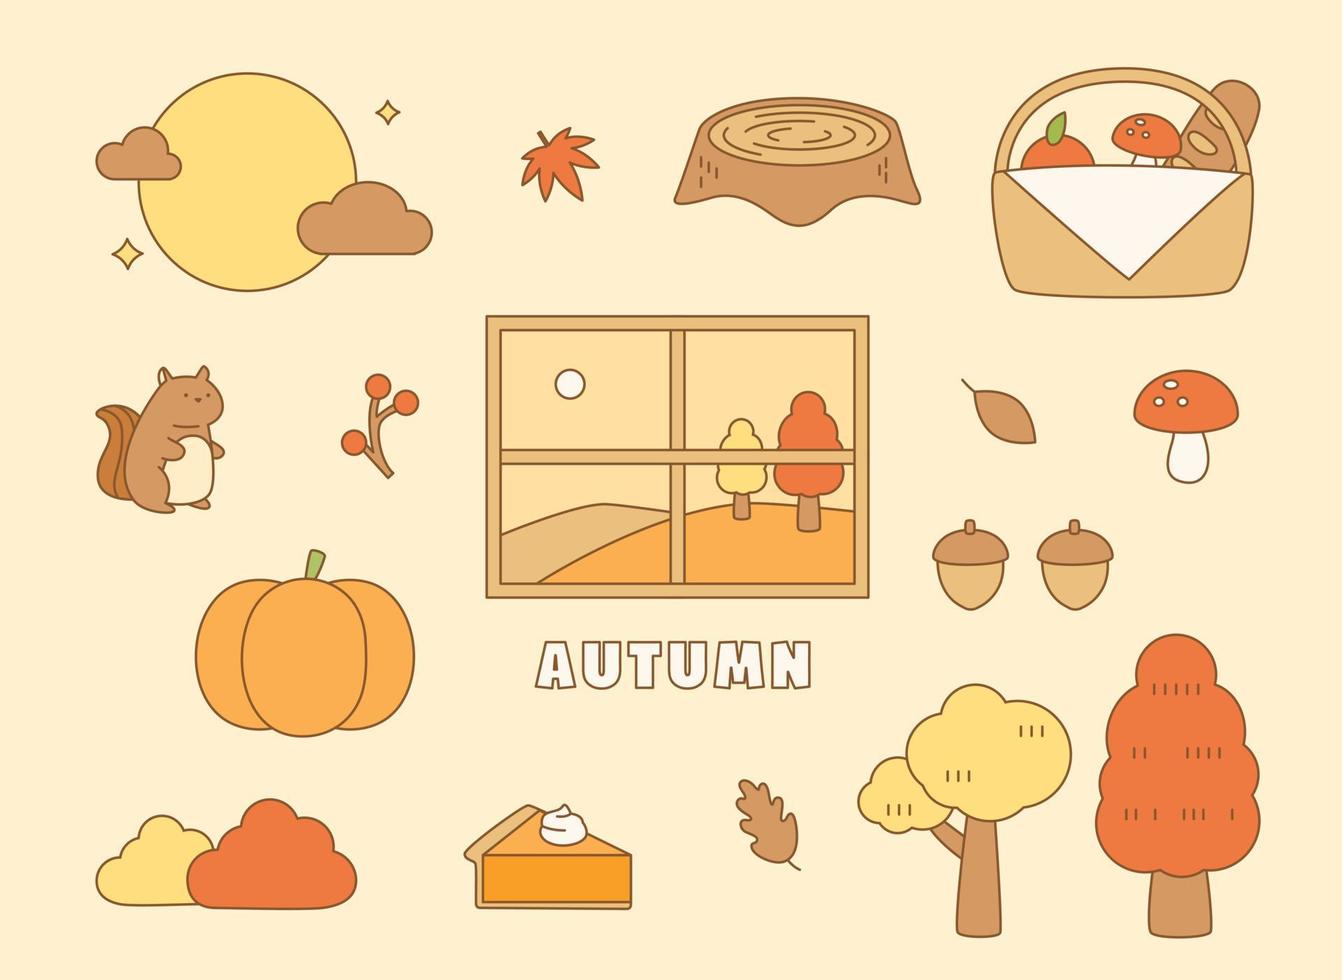 objetos que representam o outono estão dispostos ao redor da janela. ilustração em vetor estilo design plano.